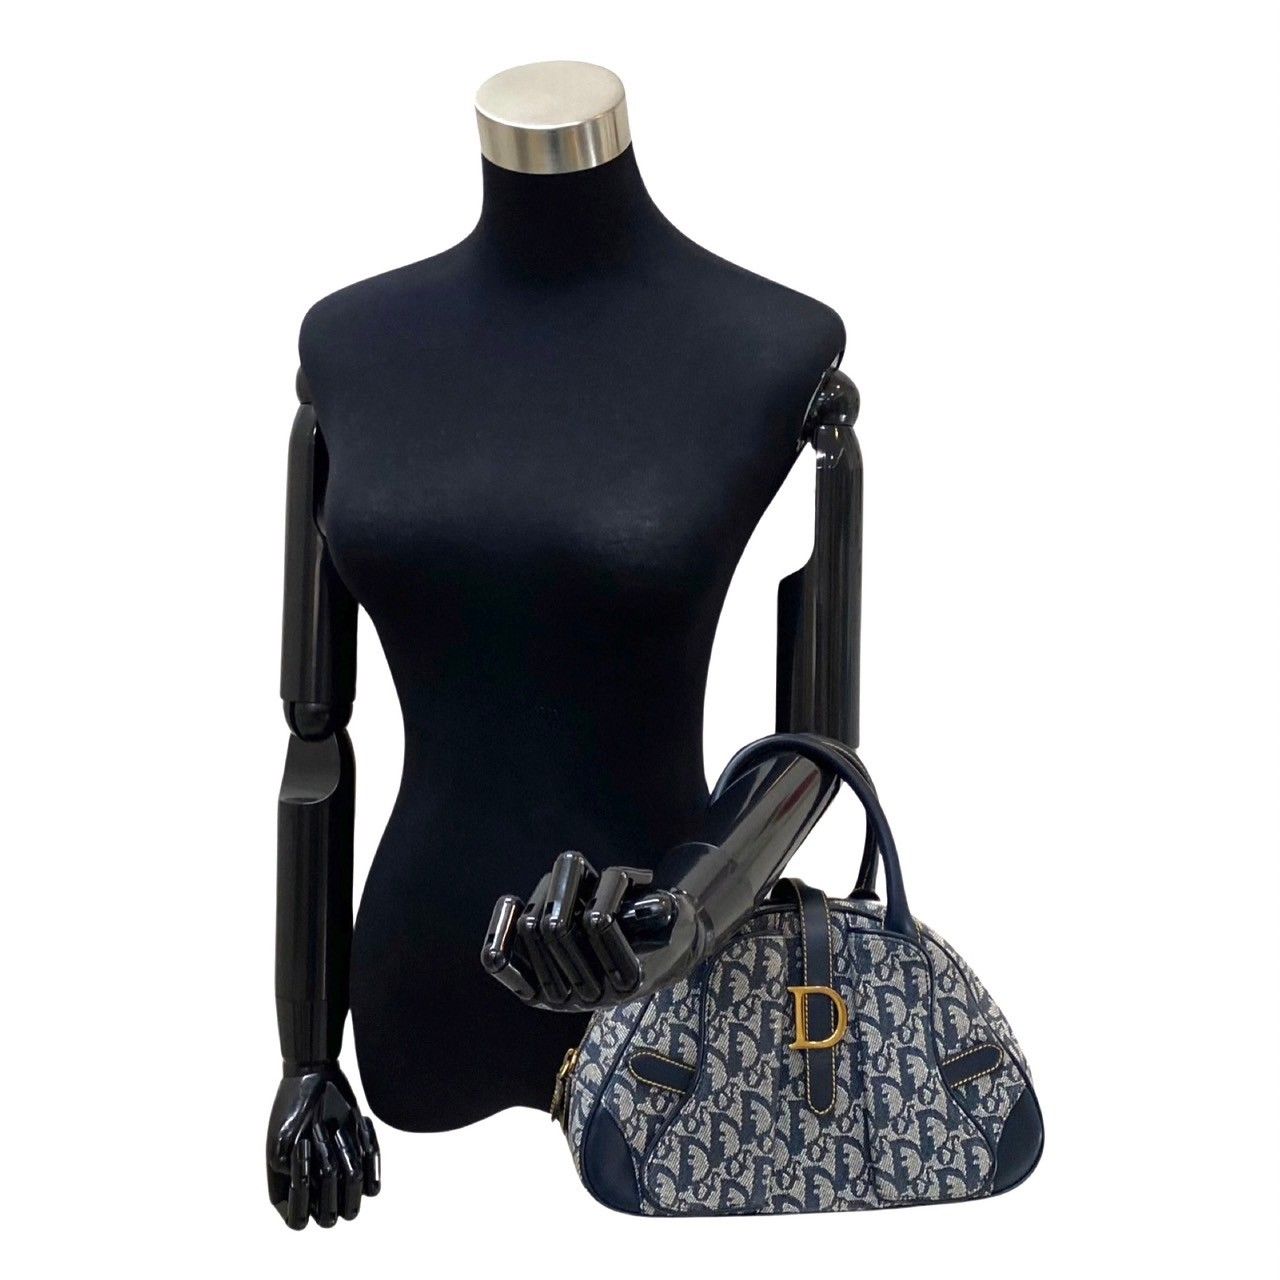 極美品 Christian Dior ディオール ダブルサドル トロッター ロゴ レザー 本革 キャンバス ハンドバッグ ミニ トートバッグ ネイビー 28090